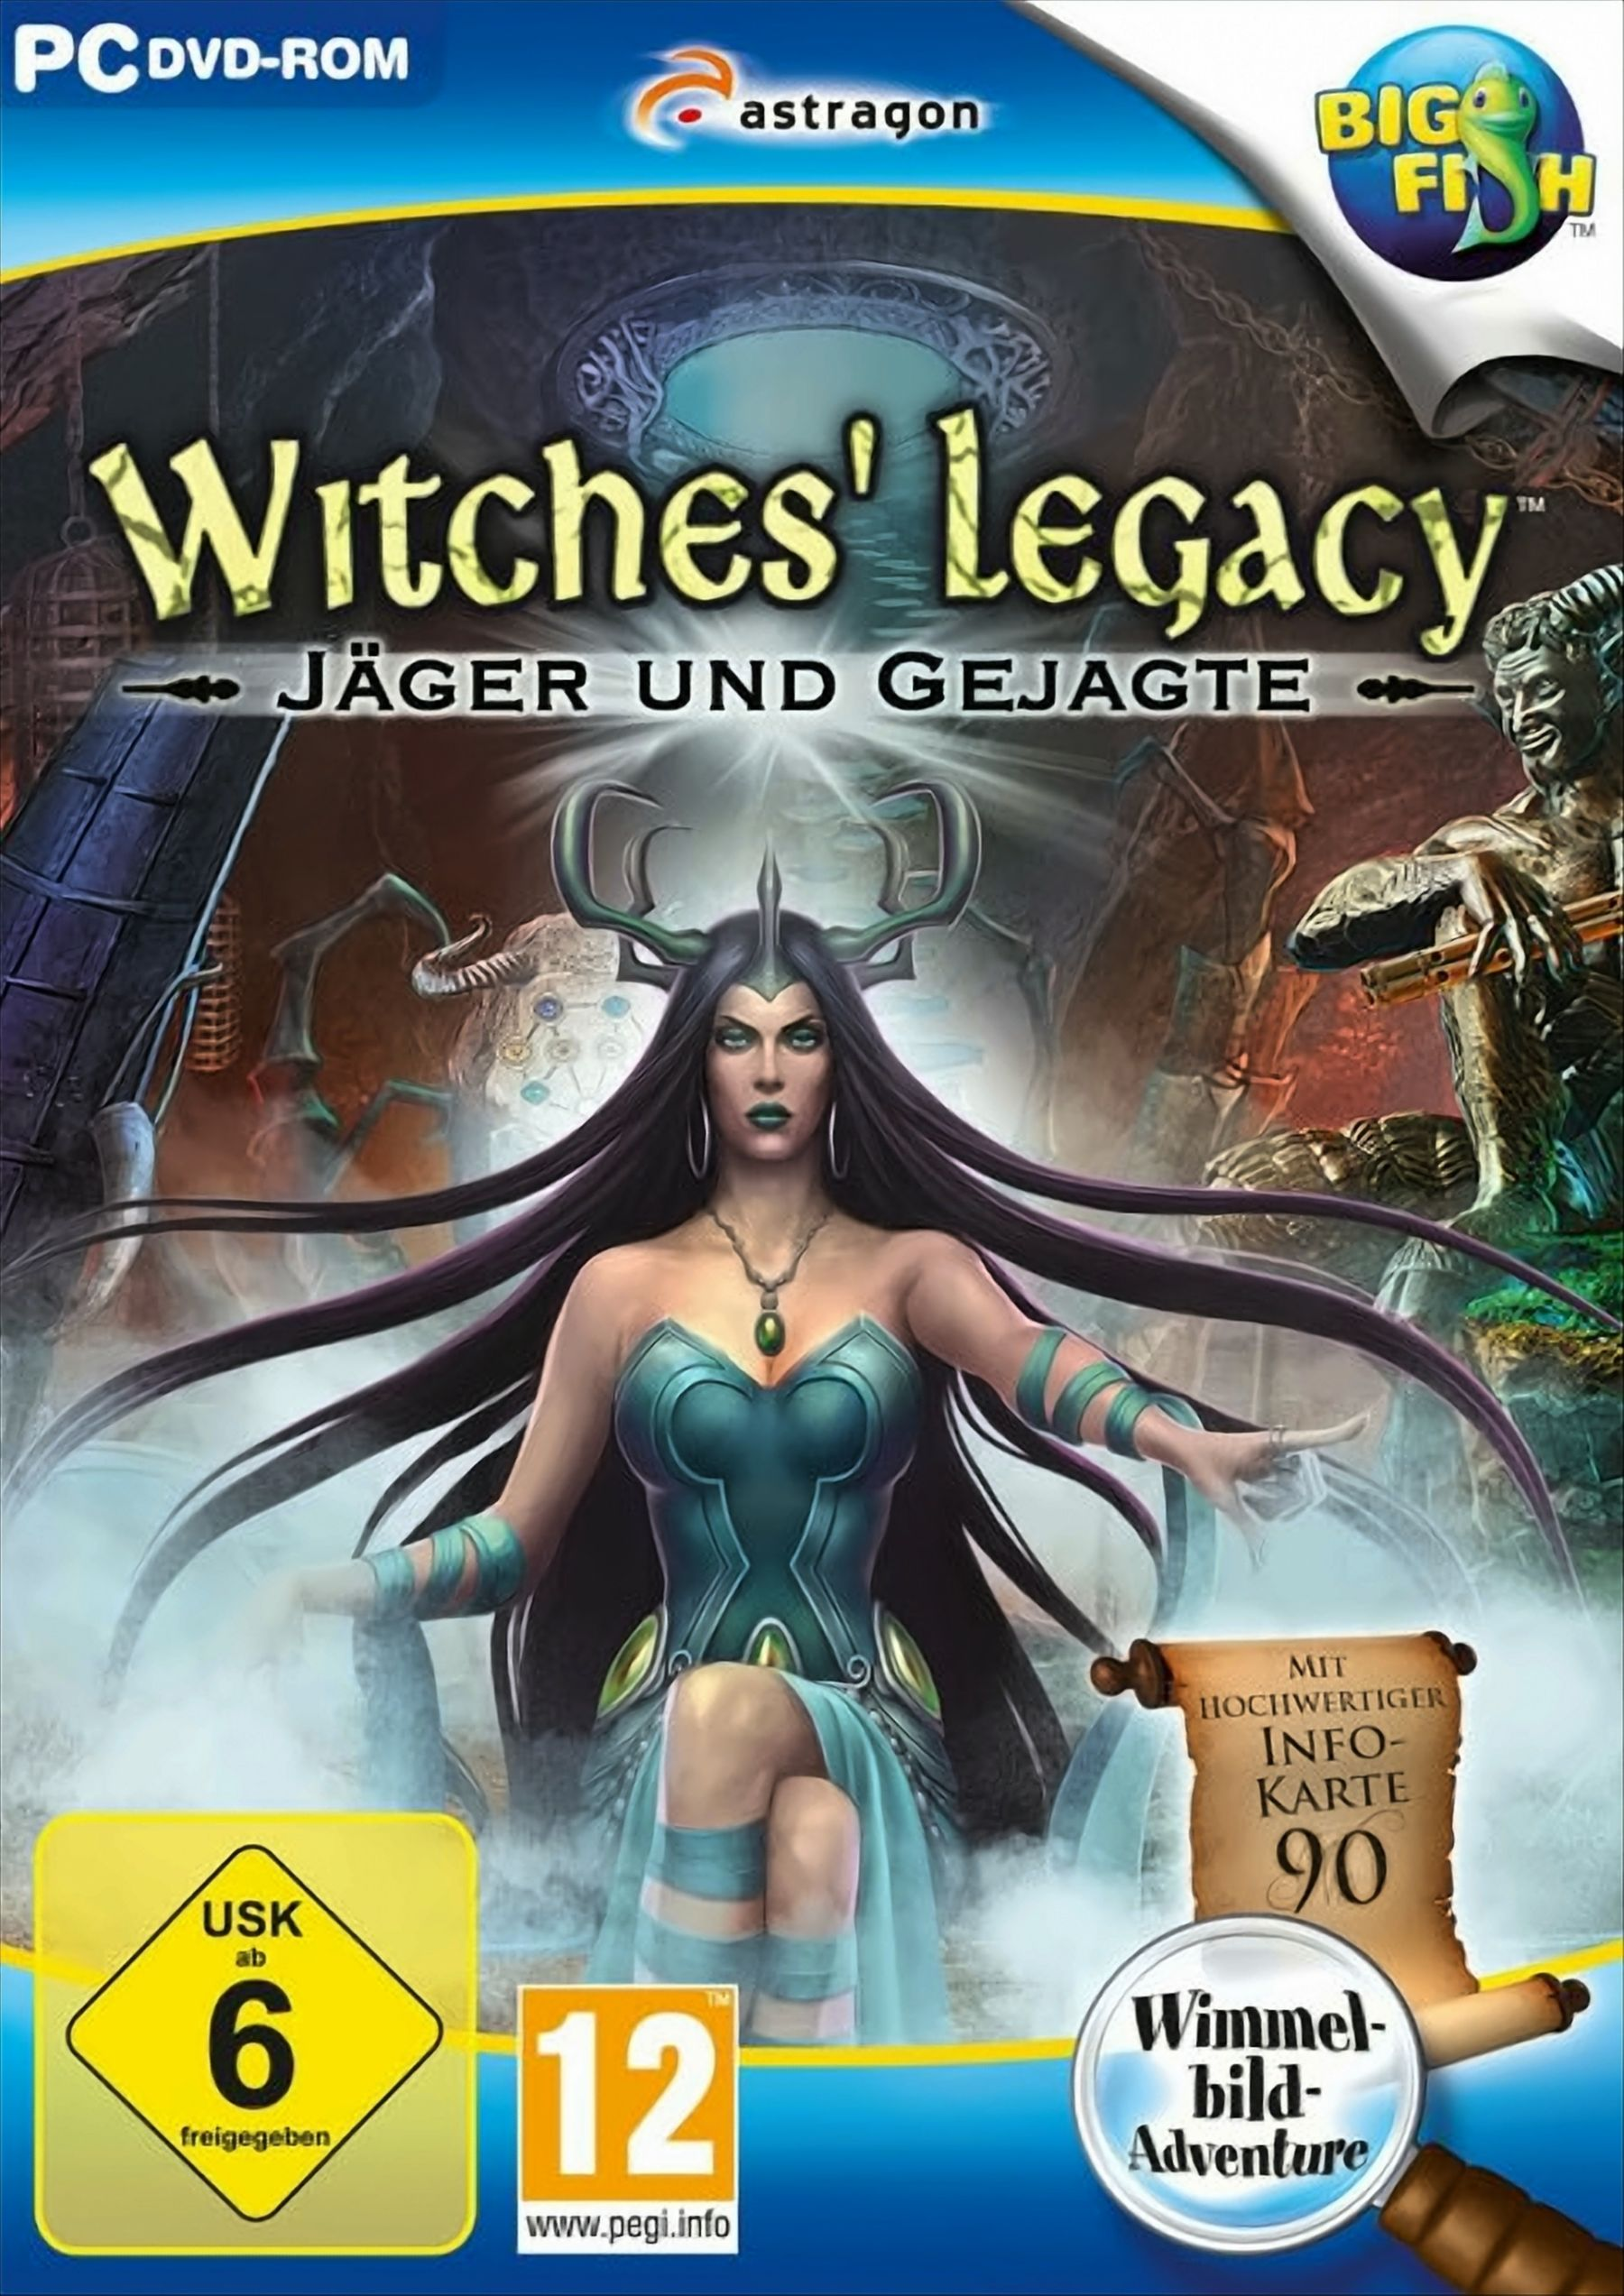 Gejagte Witches\' Jäger - [PC] und Legacy: